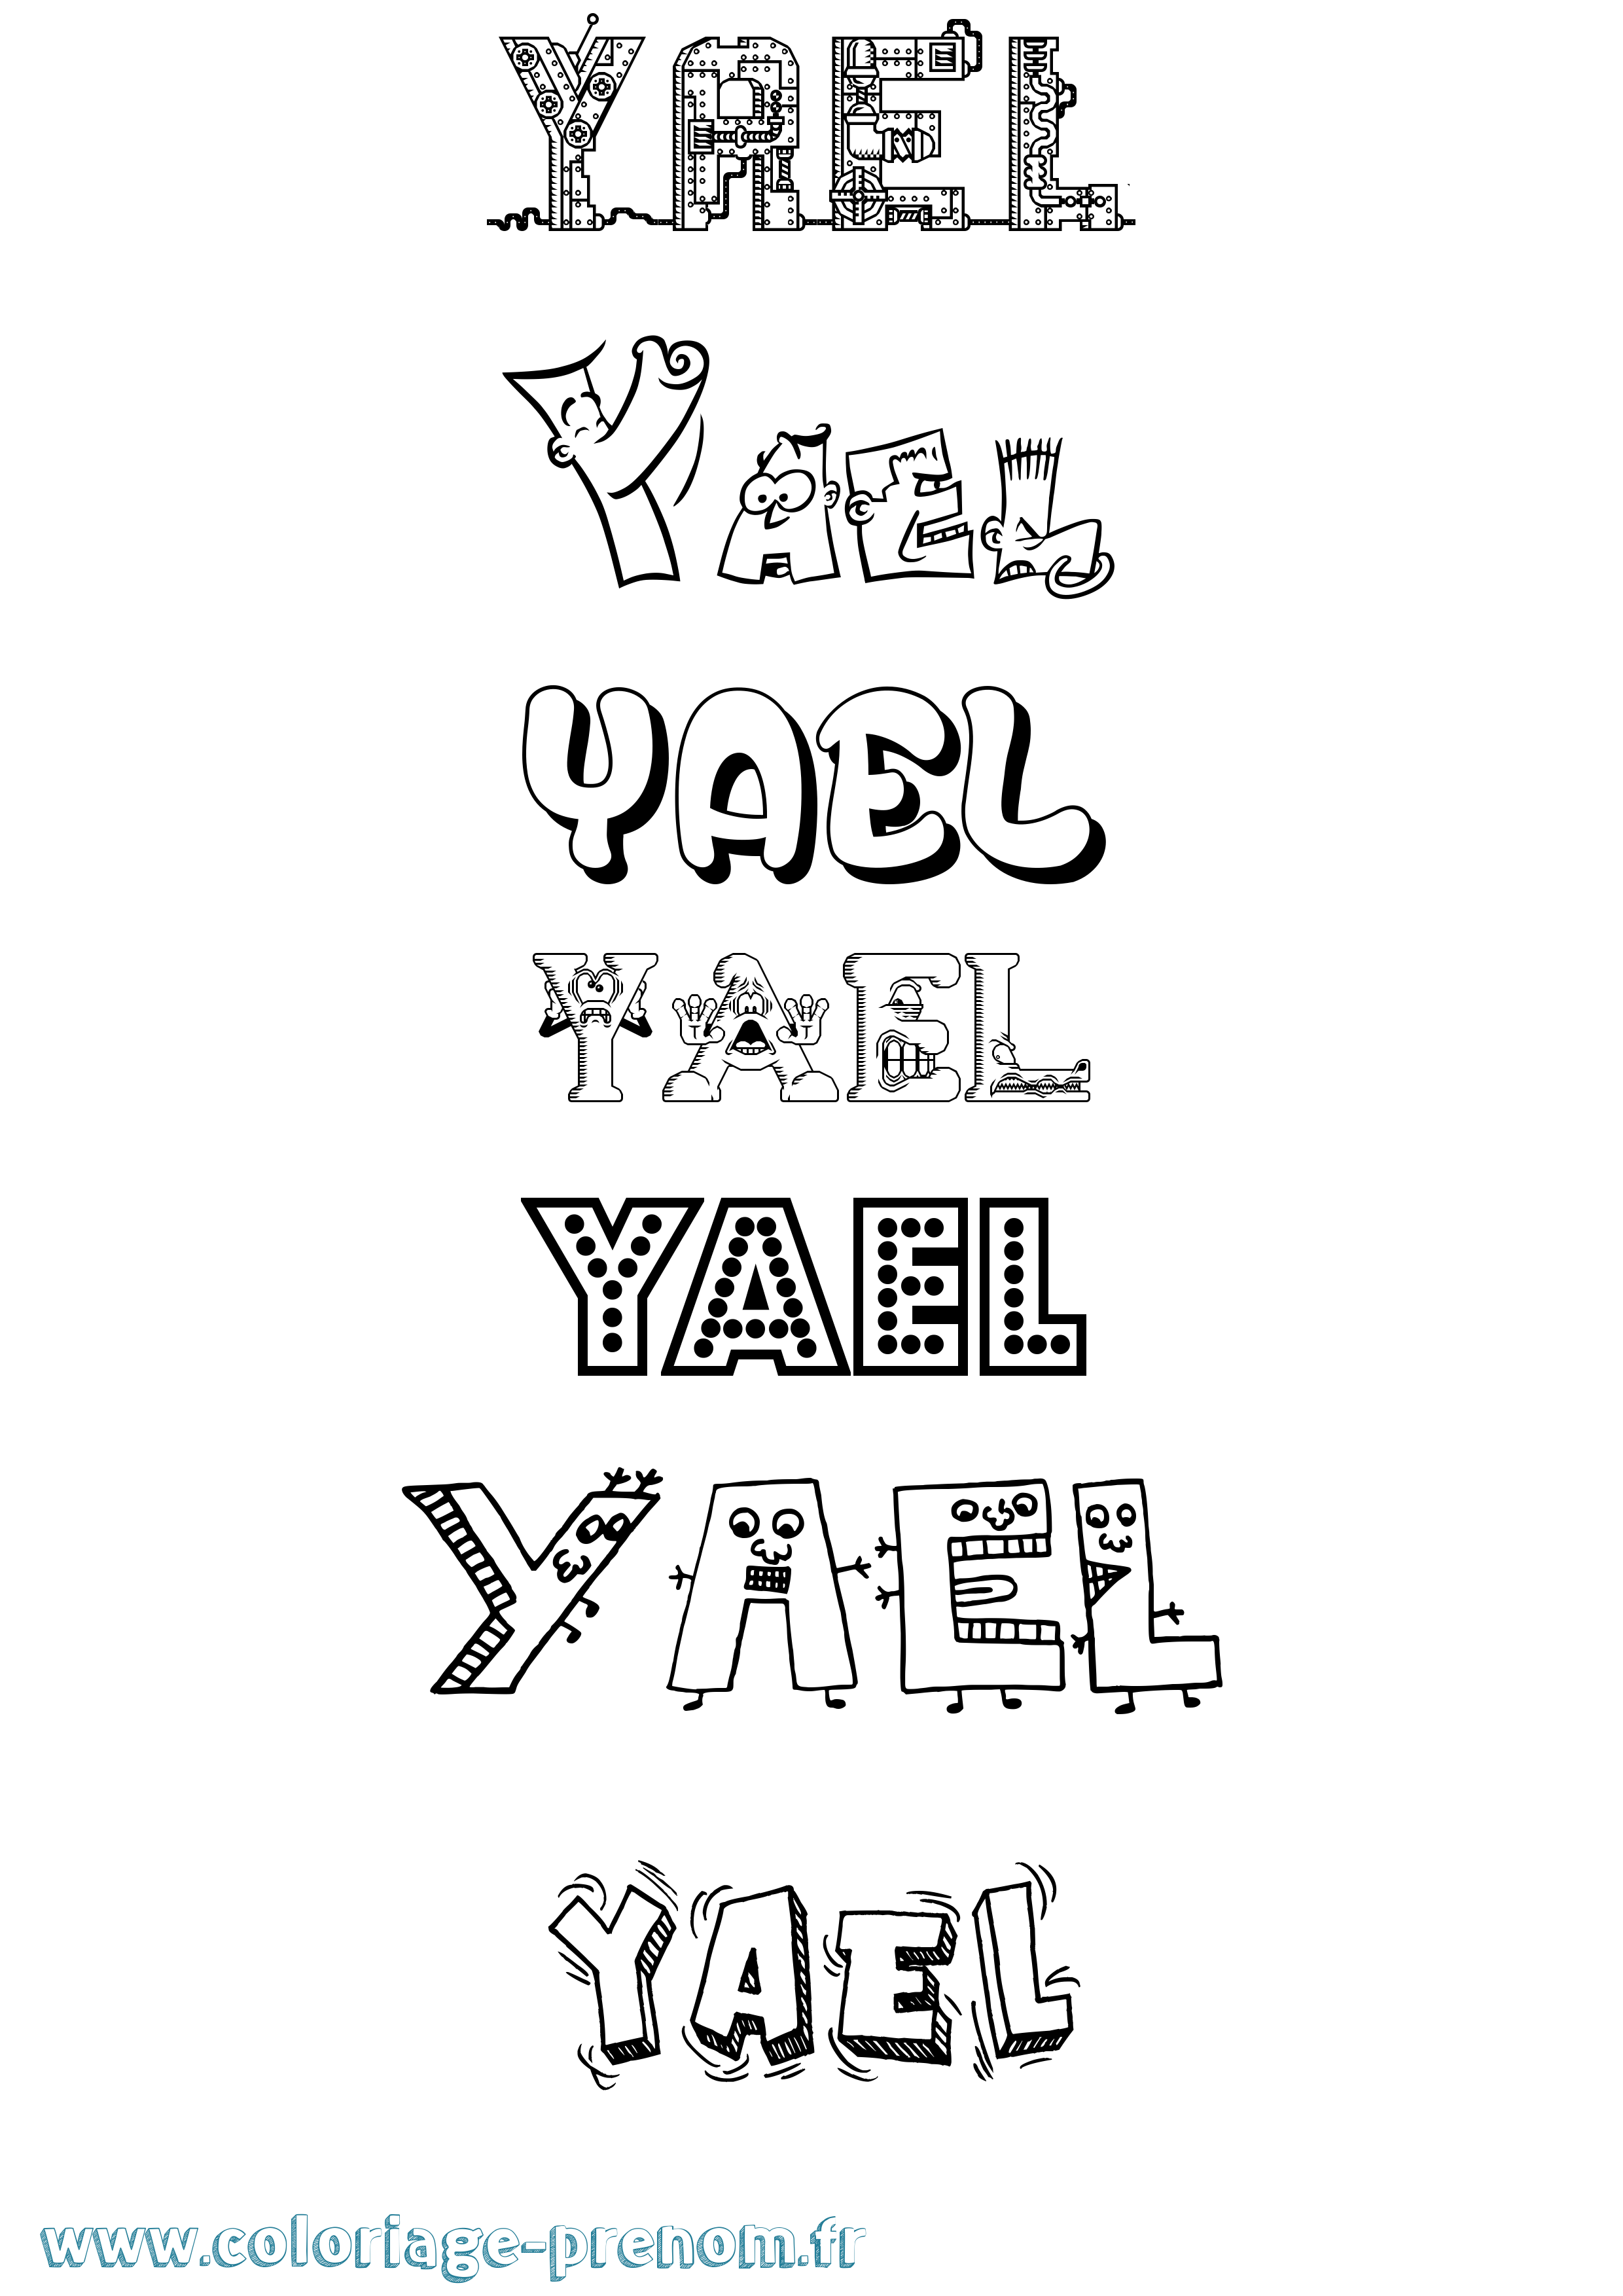 Coloriage prénom Yael Fun